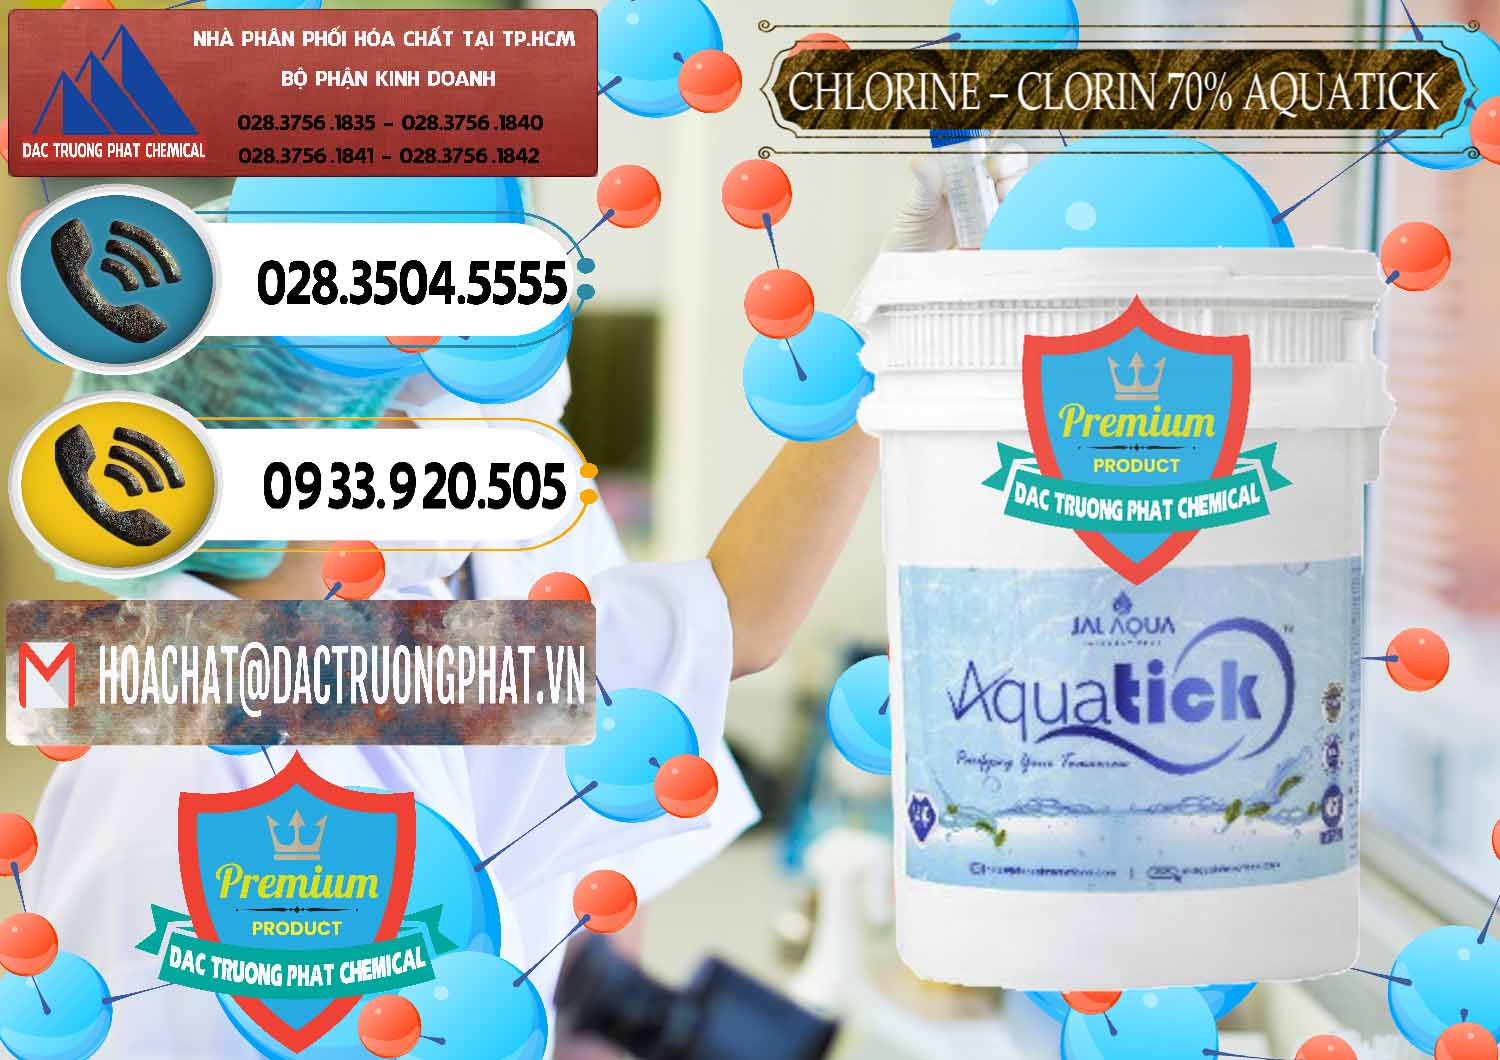 Đơn vị chuyên cung cấp ( bán ) Chlorine – Clorin 70% Aquatick Thùng Cao Jal Aqua Ấn Độ India - 0237 - Cung cấp và kinh doanh hóa chất tại TP.HCM - hoachatdetnhuom.vn